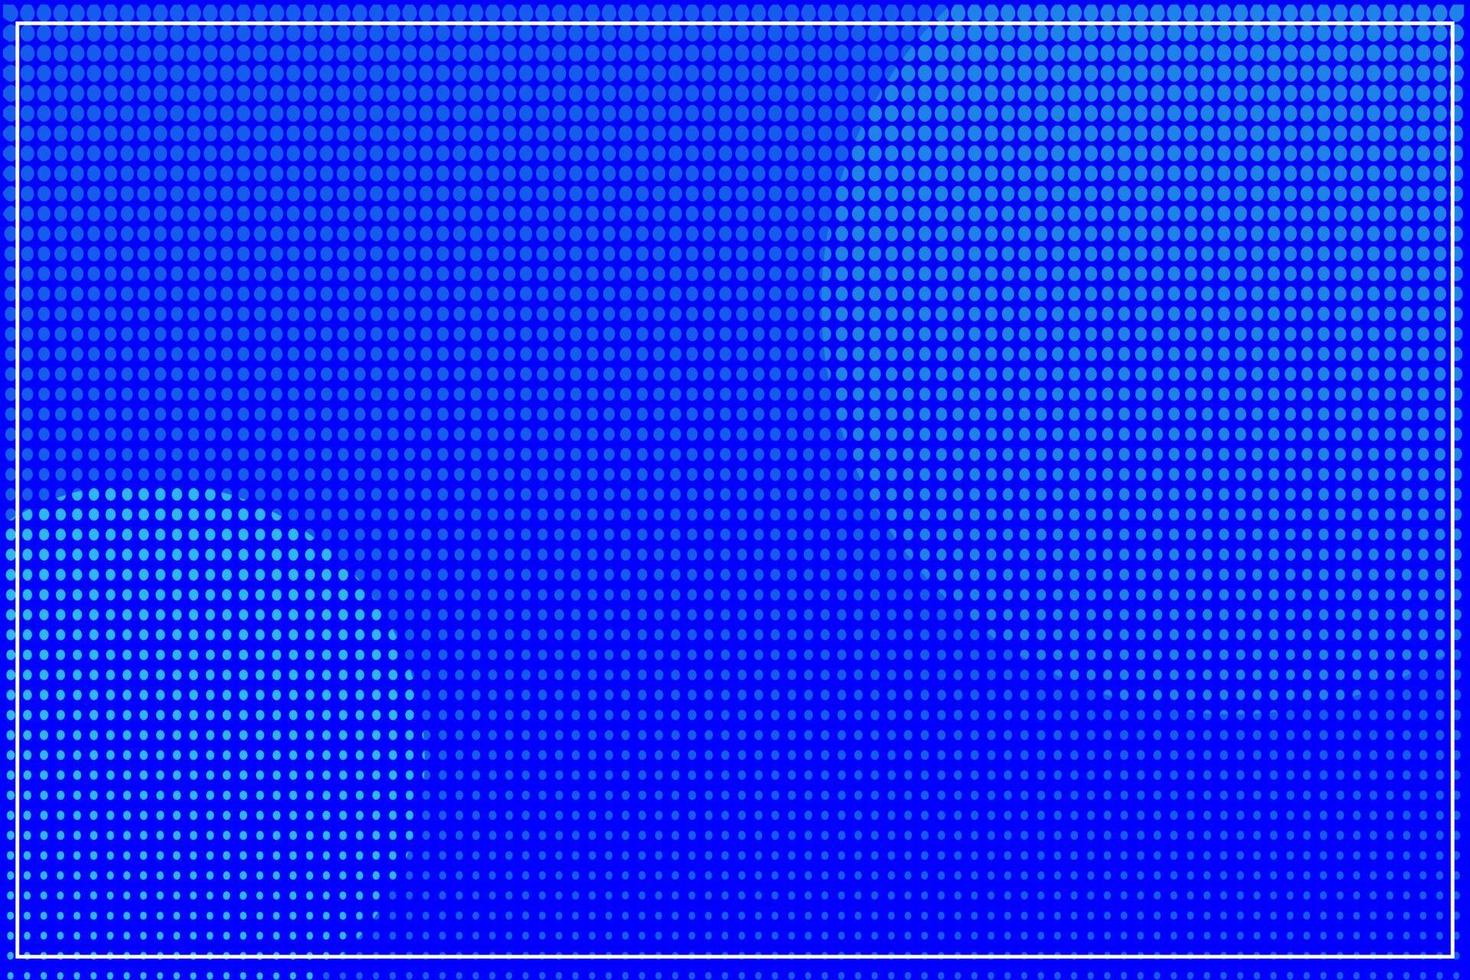 gepunktetes muster der blauen halbtonhintergrundwelle, punkt, kreise. Vektor moderne Kunsttextur für Poster, Visitenkarten, Cover, Etiketten-Mock-up, Aufkleber-Layout